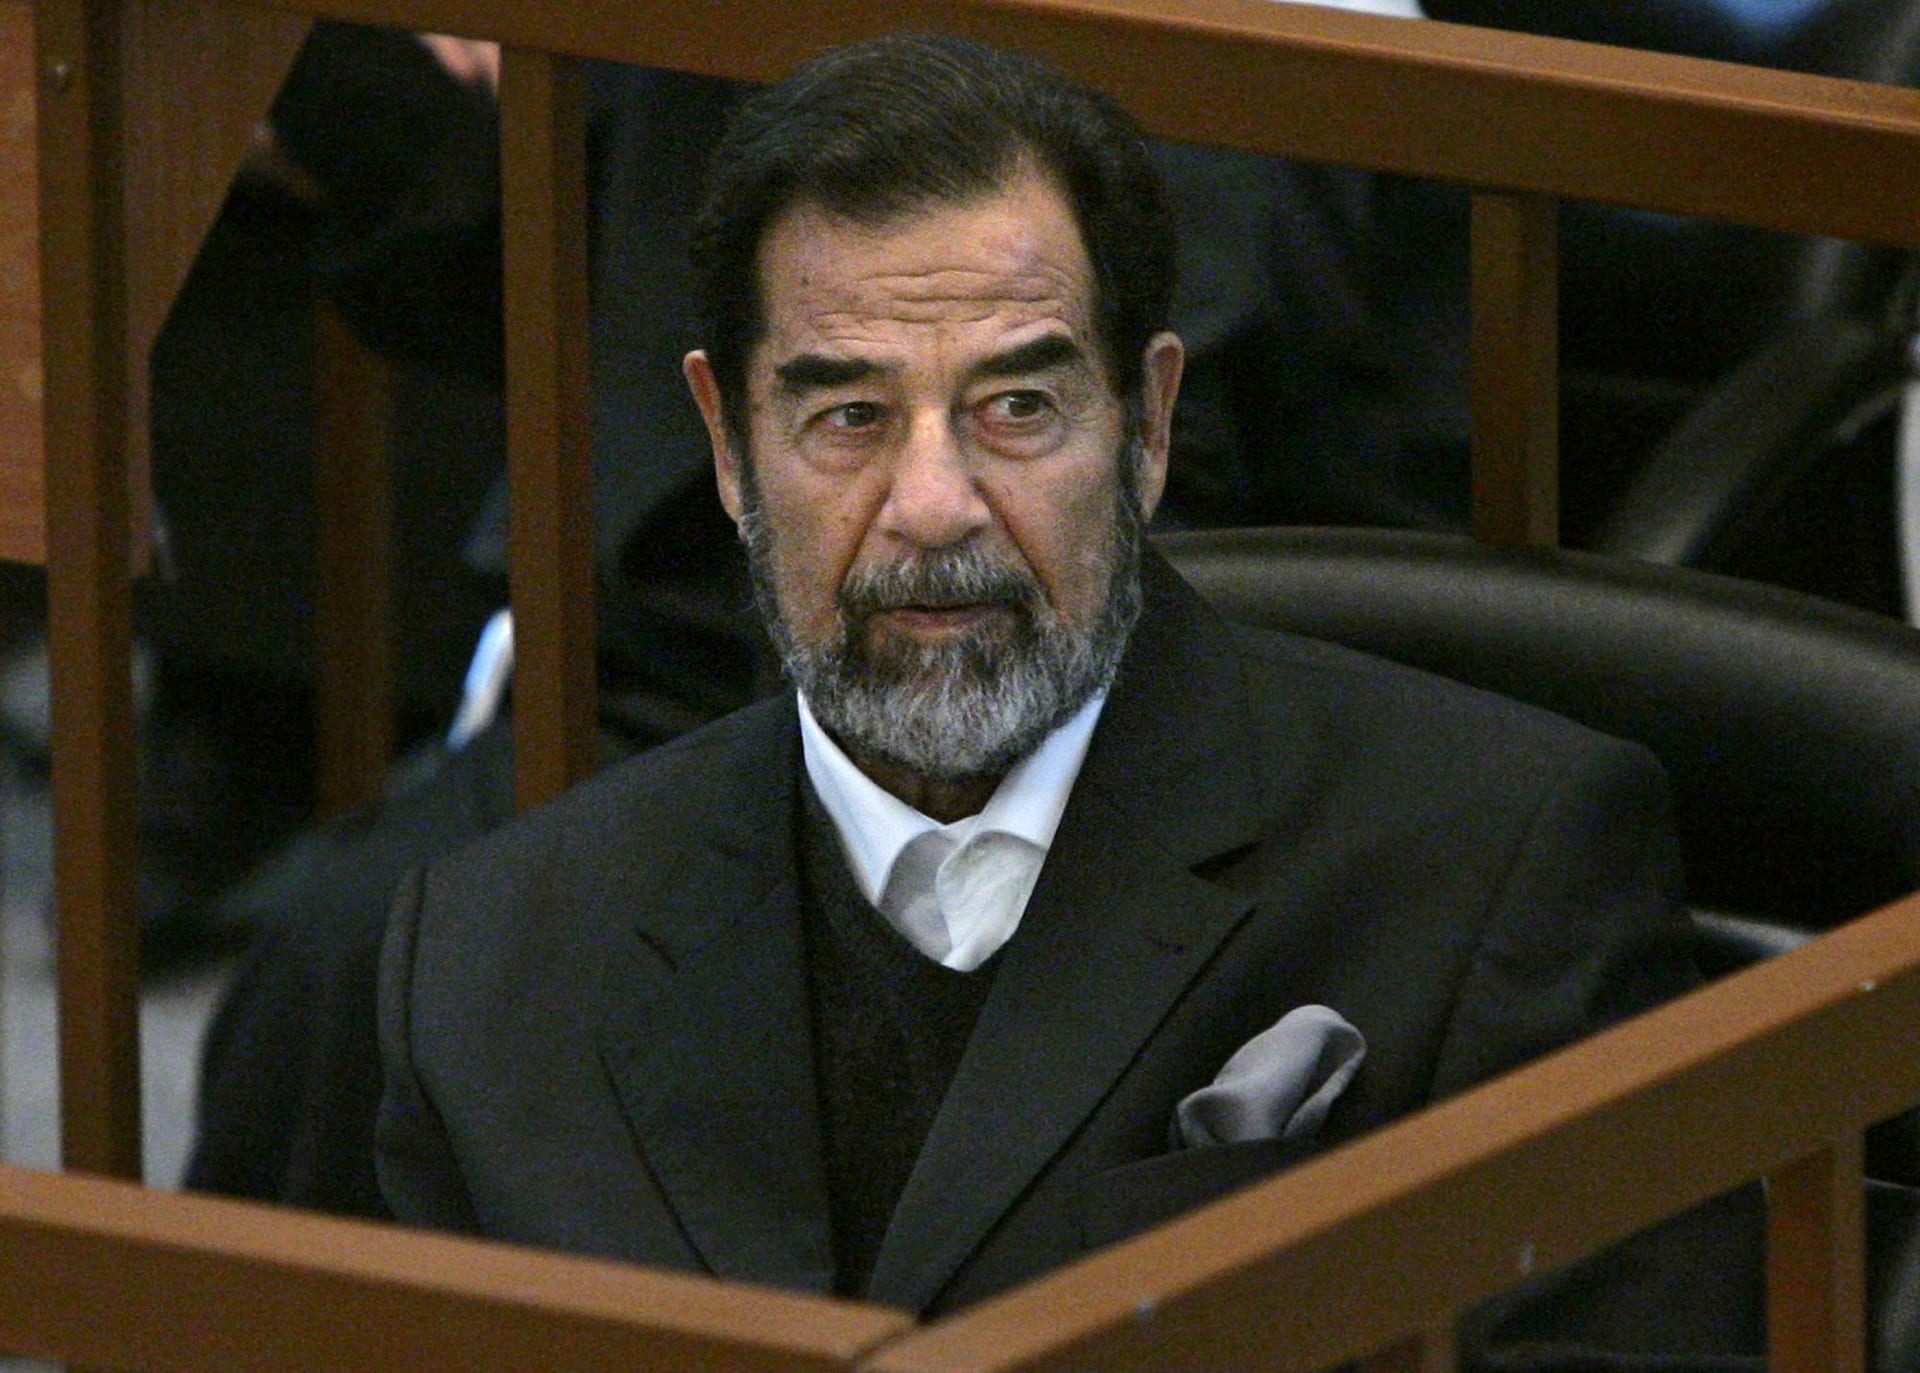 "الأمة العربية والعراق ليسا بخير يا أبي".. رغد صدام حسين تبدأ نشر مذكرات والدها الخاصة خلال تواجده بالمعتقل الأمريكي